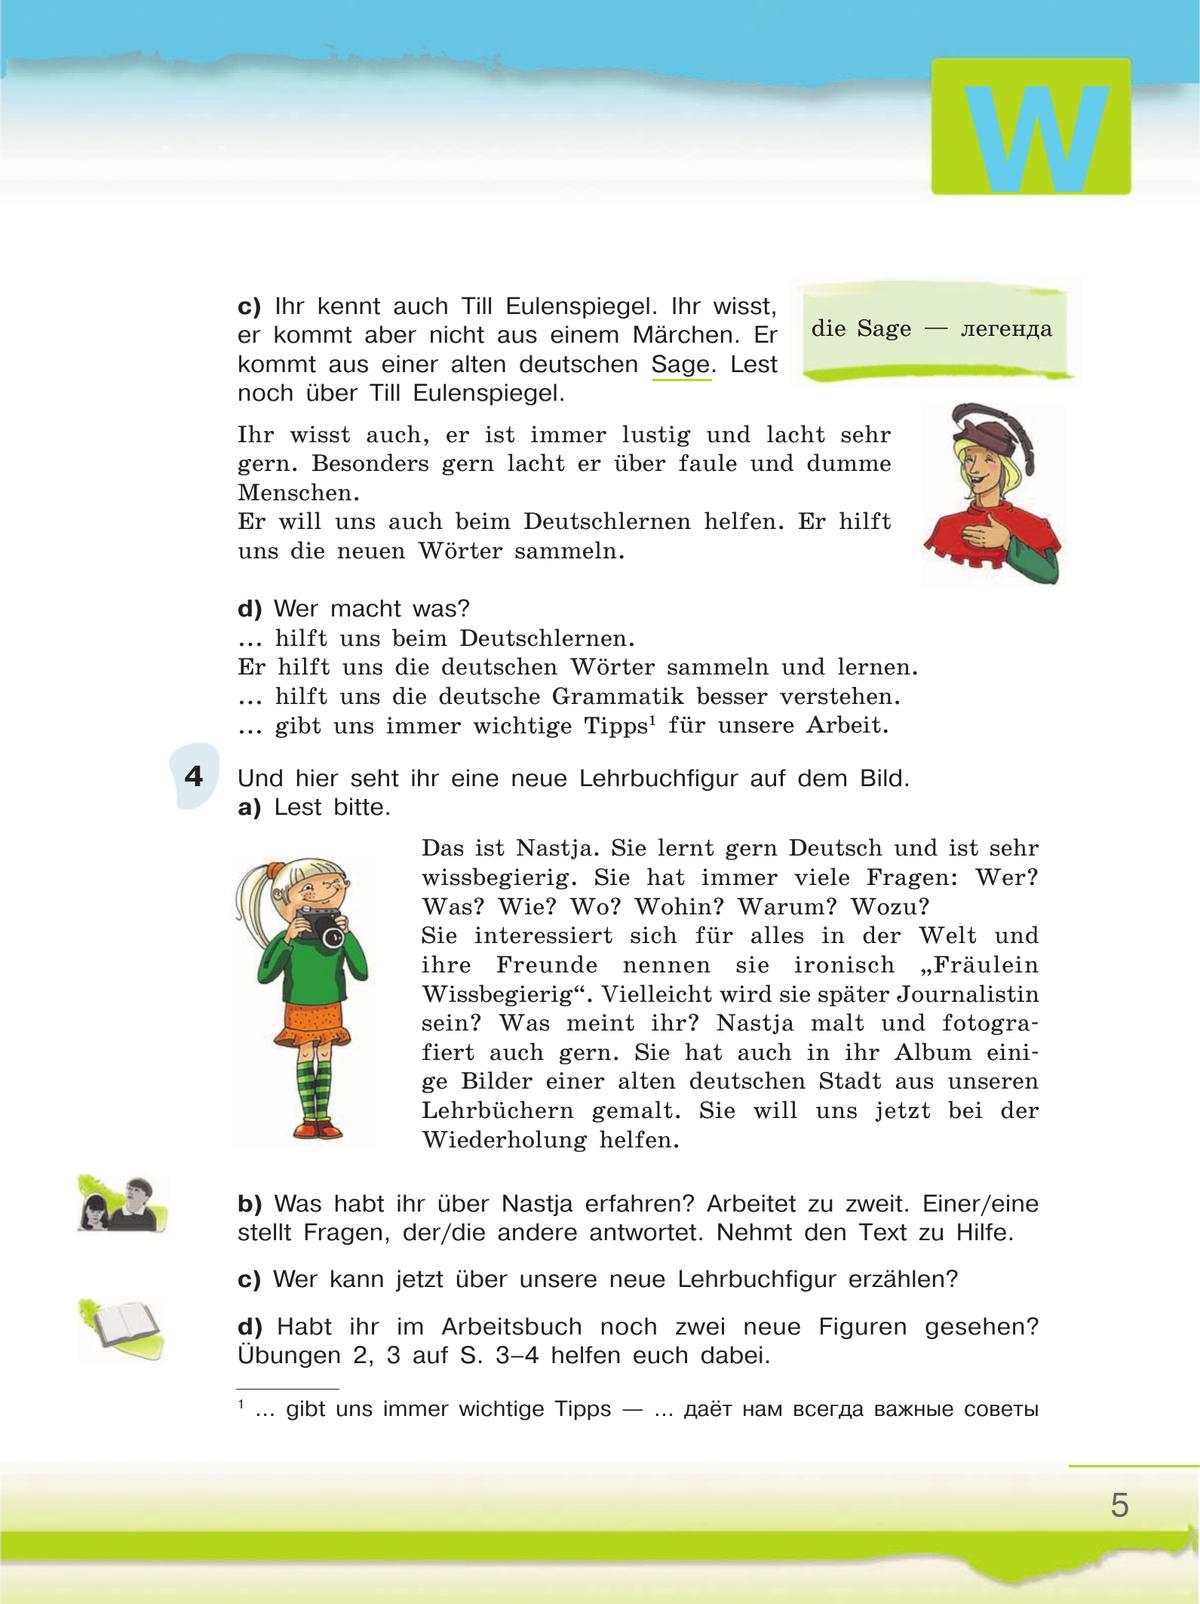 Немецкий язык. 6 класс. Учебник. В 2 ч. Часть 1 7